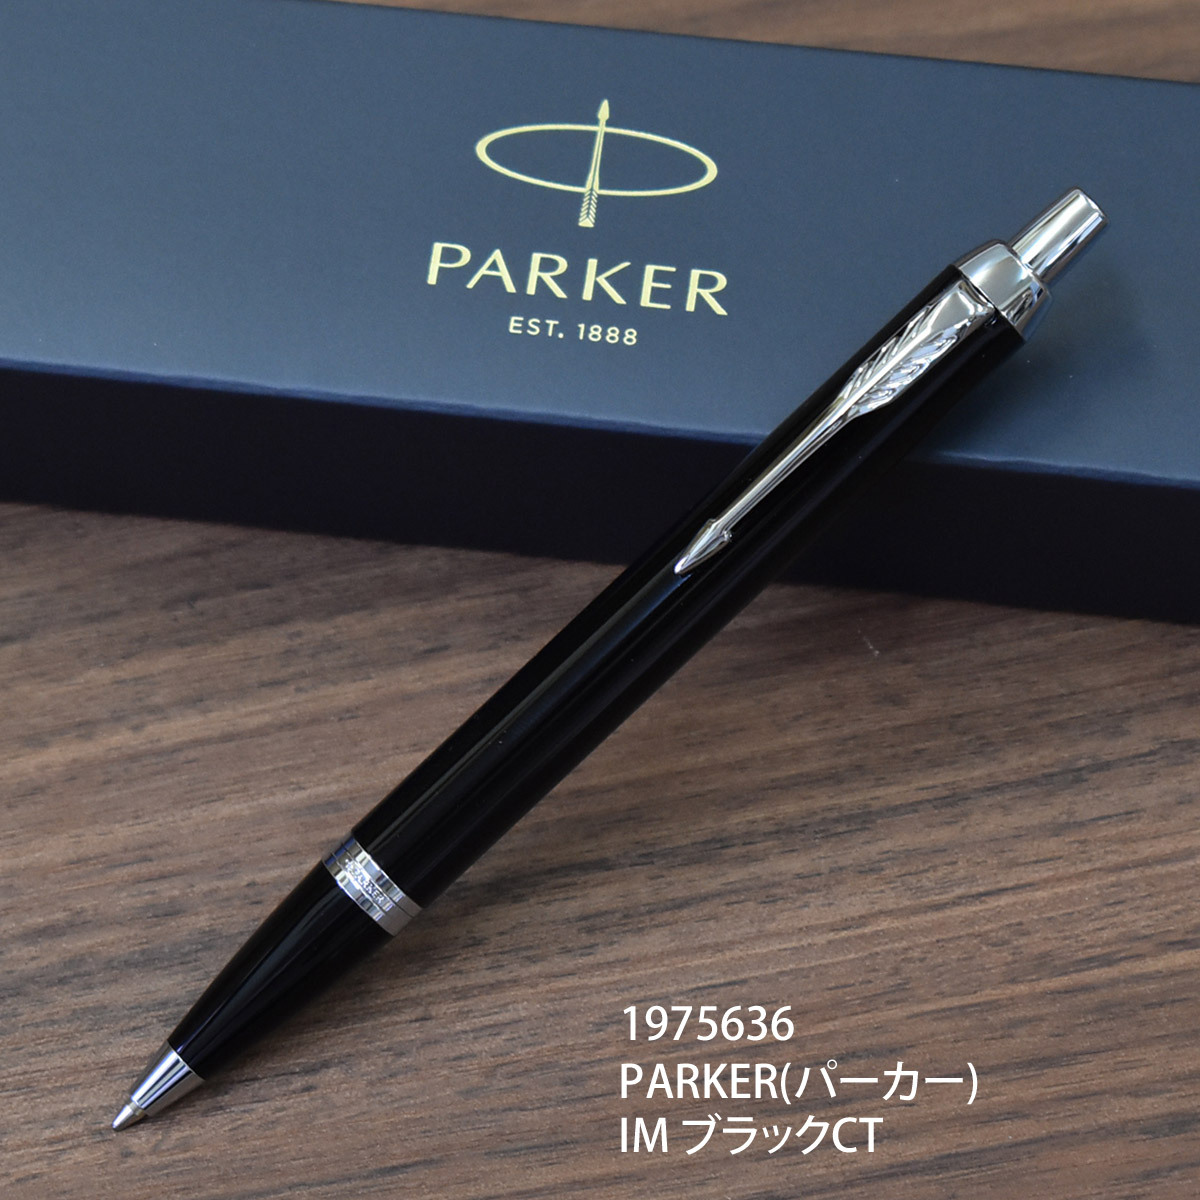 PARKER(パーカー)IM ボールペン 名入れ ブラックCT